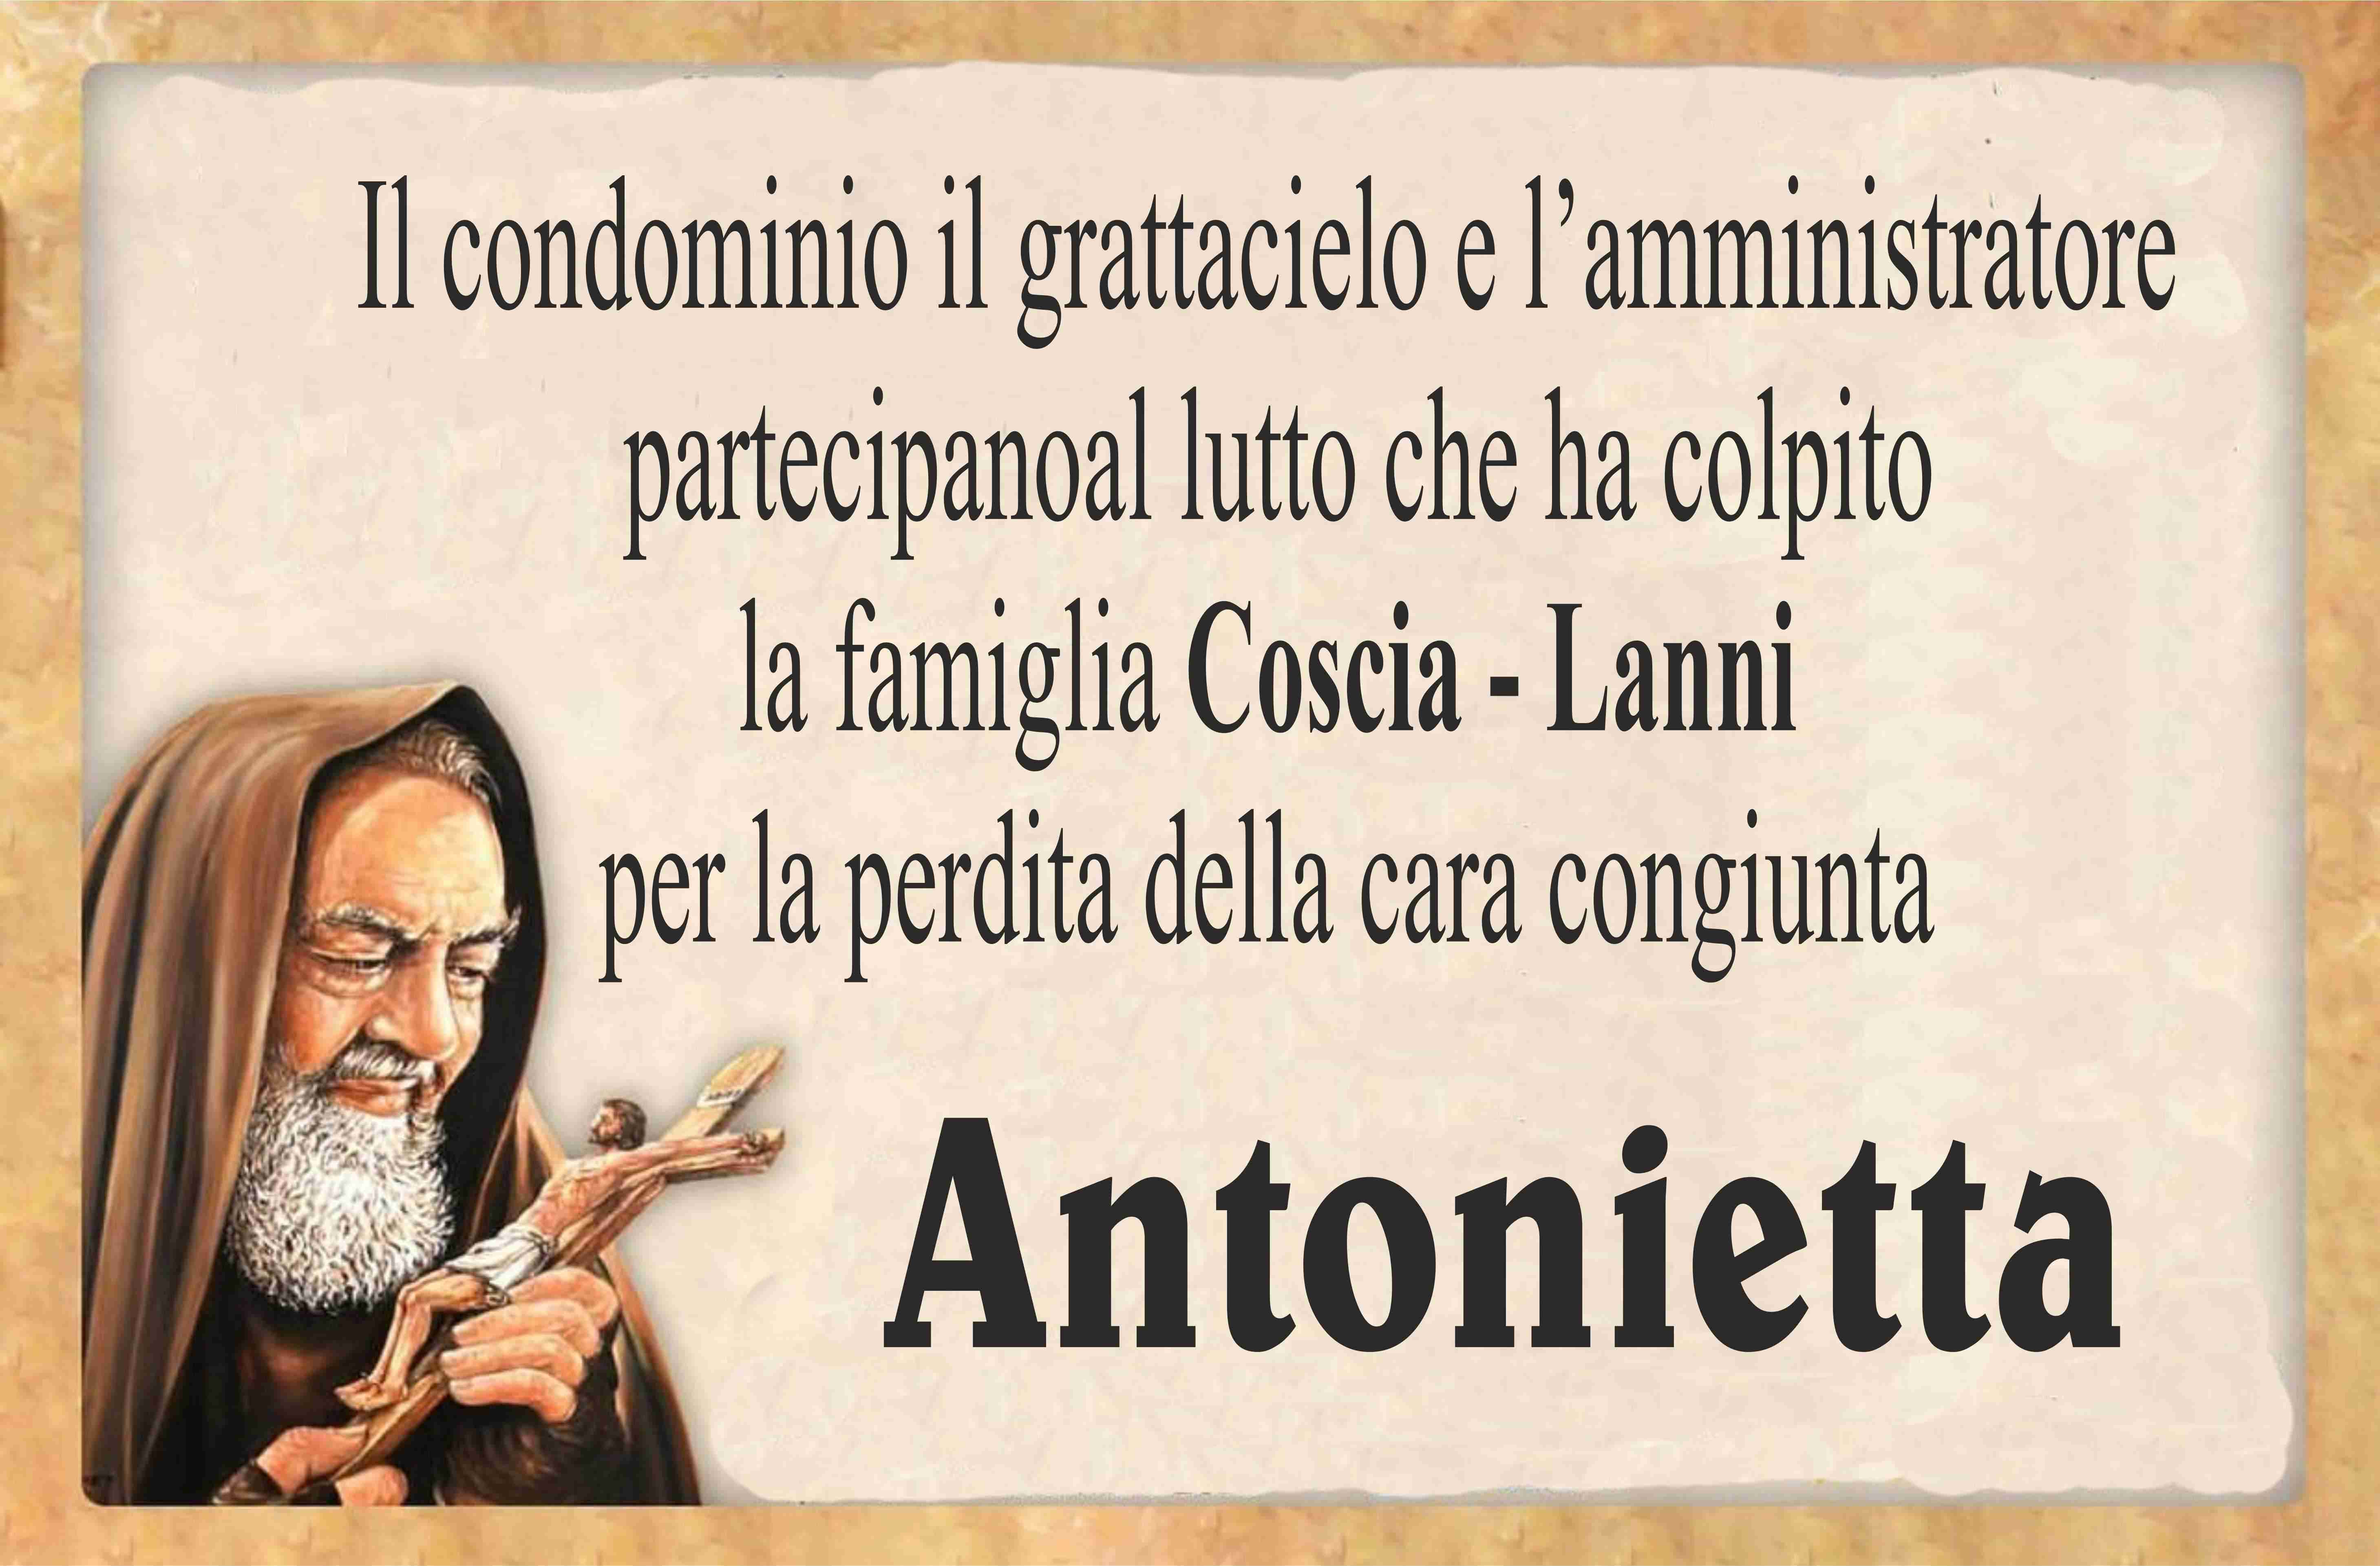 Antonietta Lanni